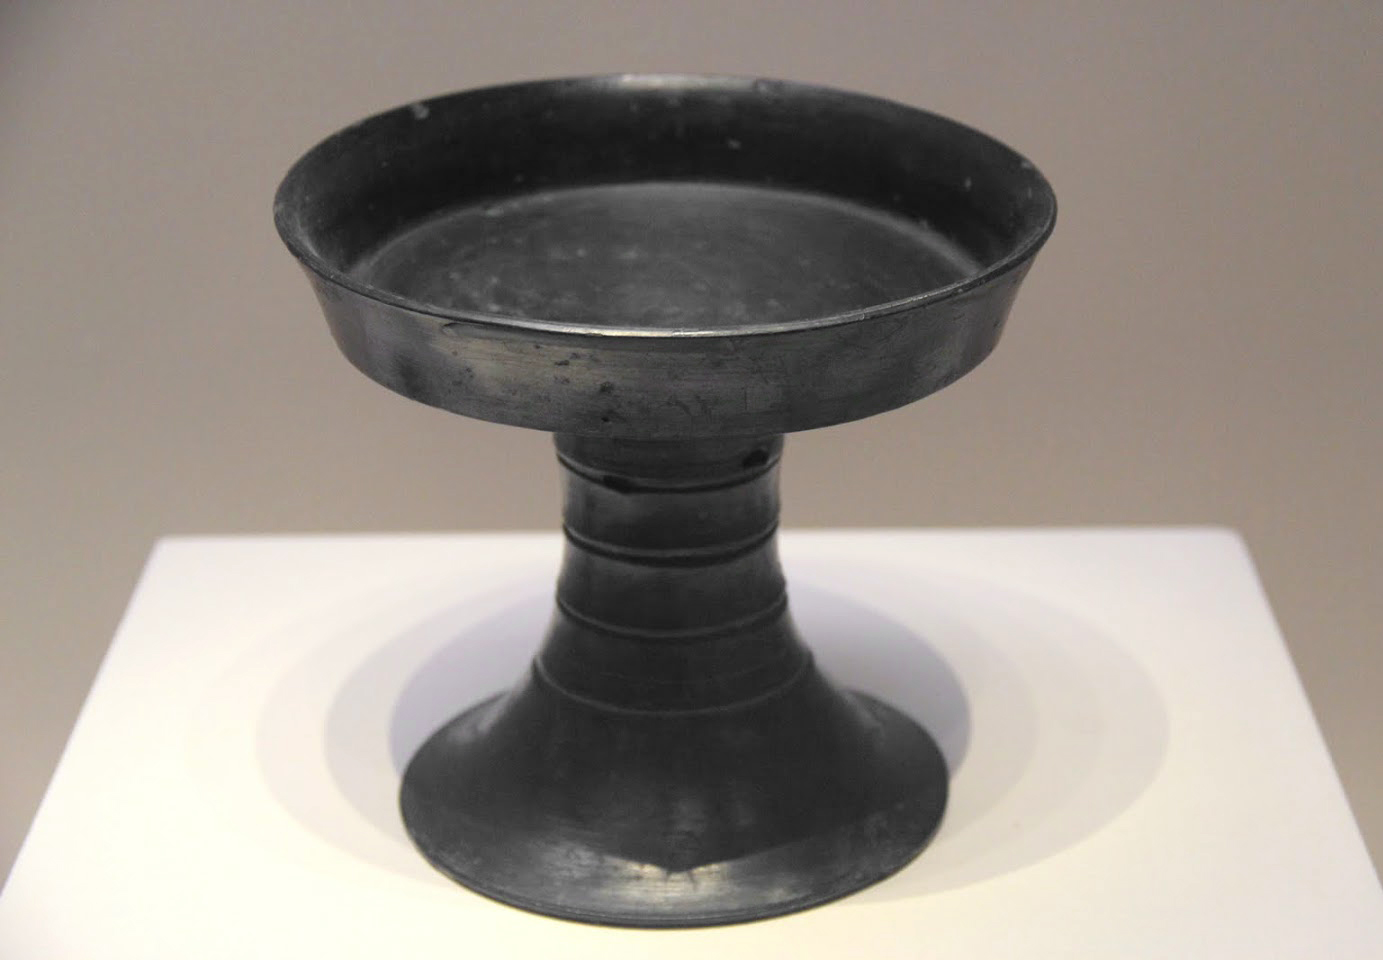 Neolithic_pottery_dou,_Liangzhu_Culture,_Zhejiang,_1955.jpg